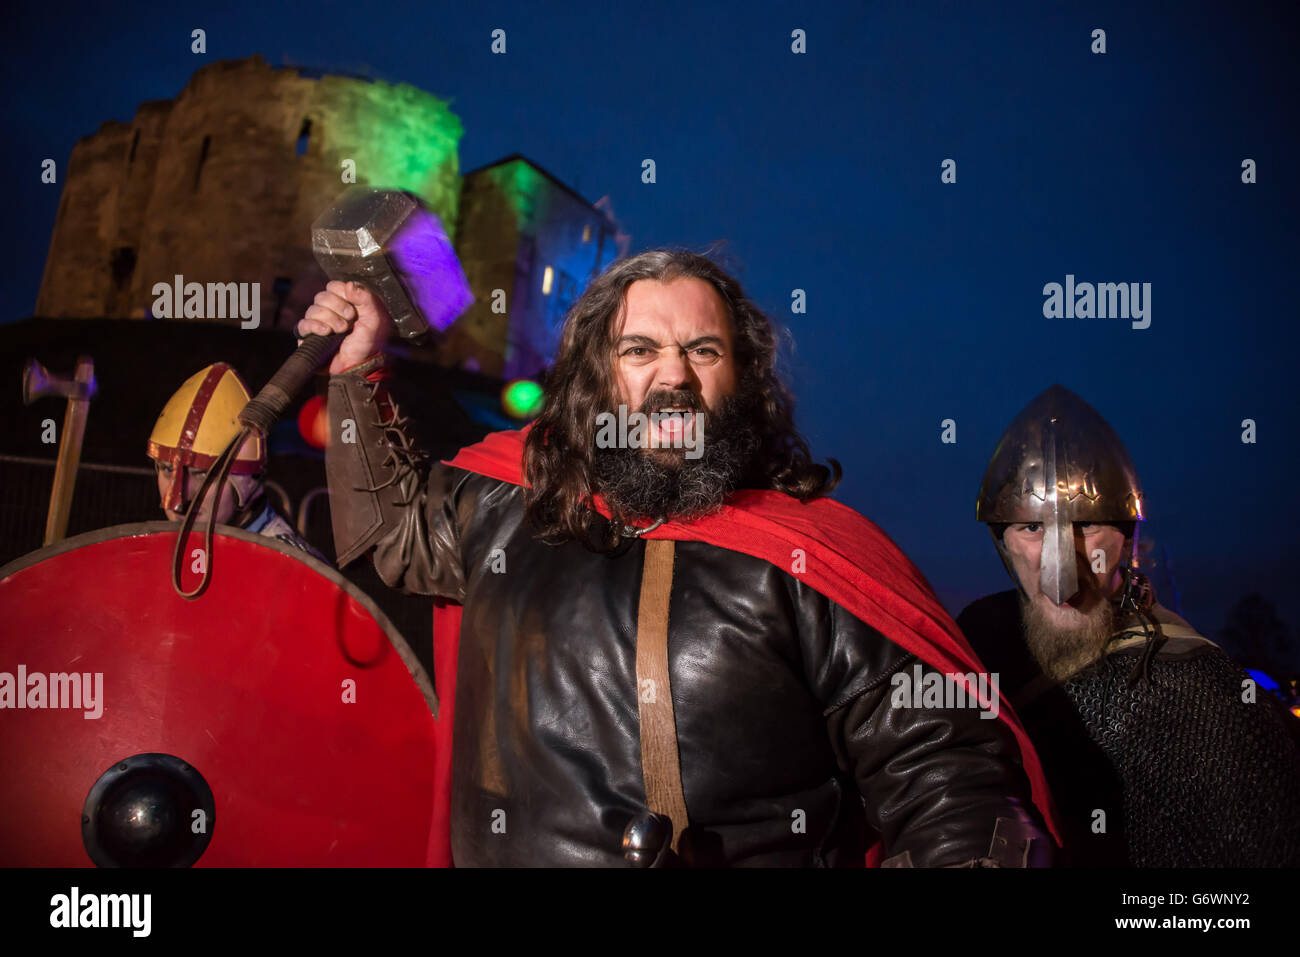 Un homme vêtu de costume viking participe au 30e Viking Festival de York qui se termine aujourd'hui après une semaine complète d'événements sur le thème de la prédiction de Ragnarok , décrite dans la mythologie viking comme la fin du monde. Banque D'Images